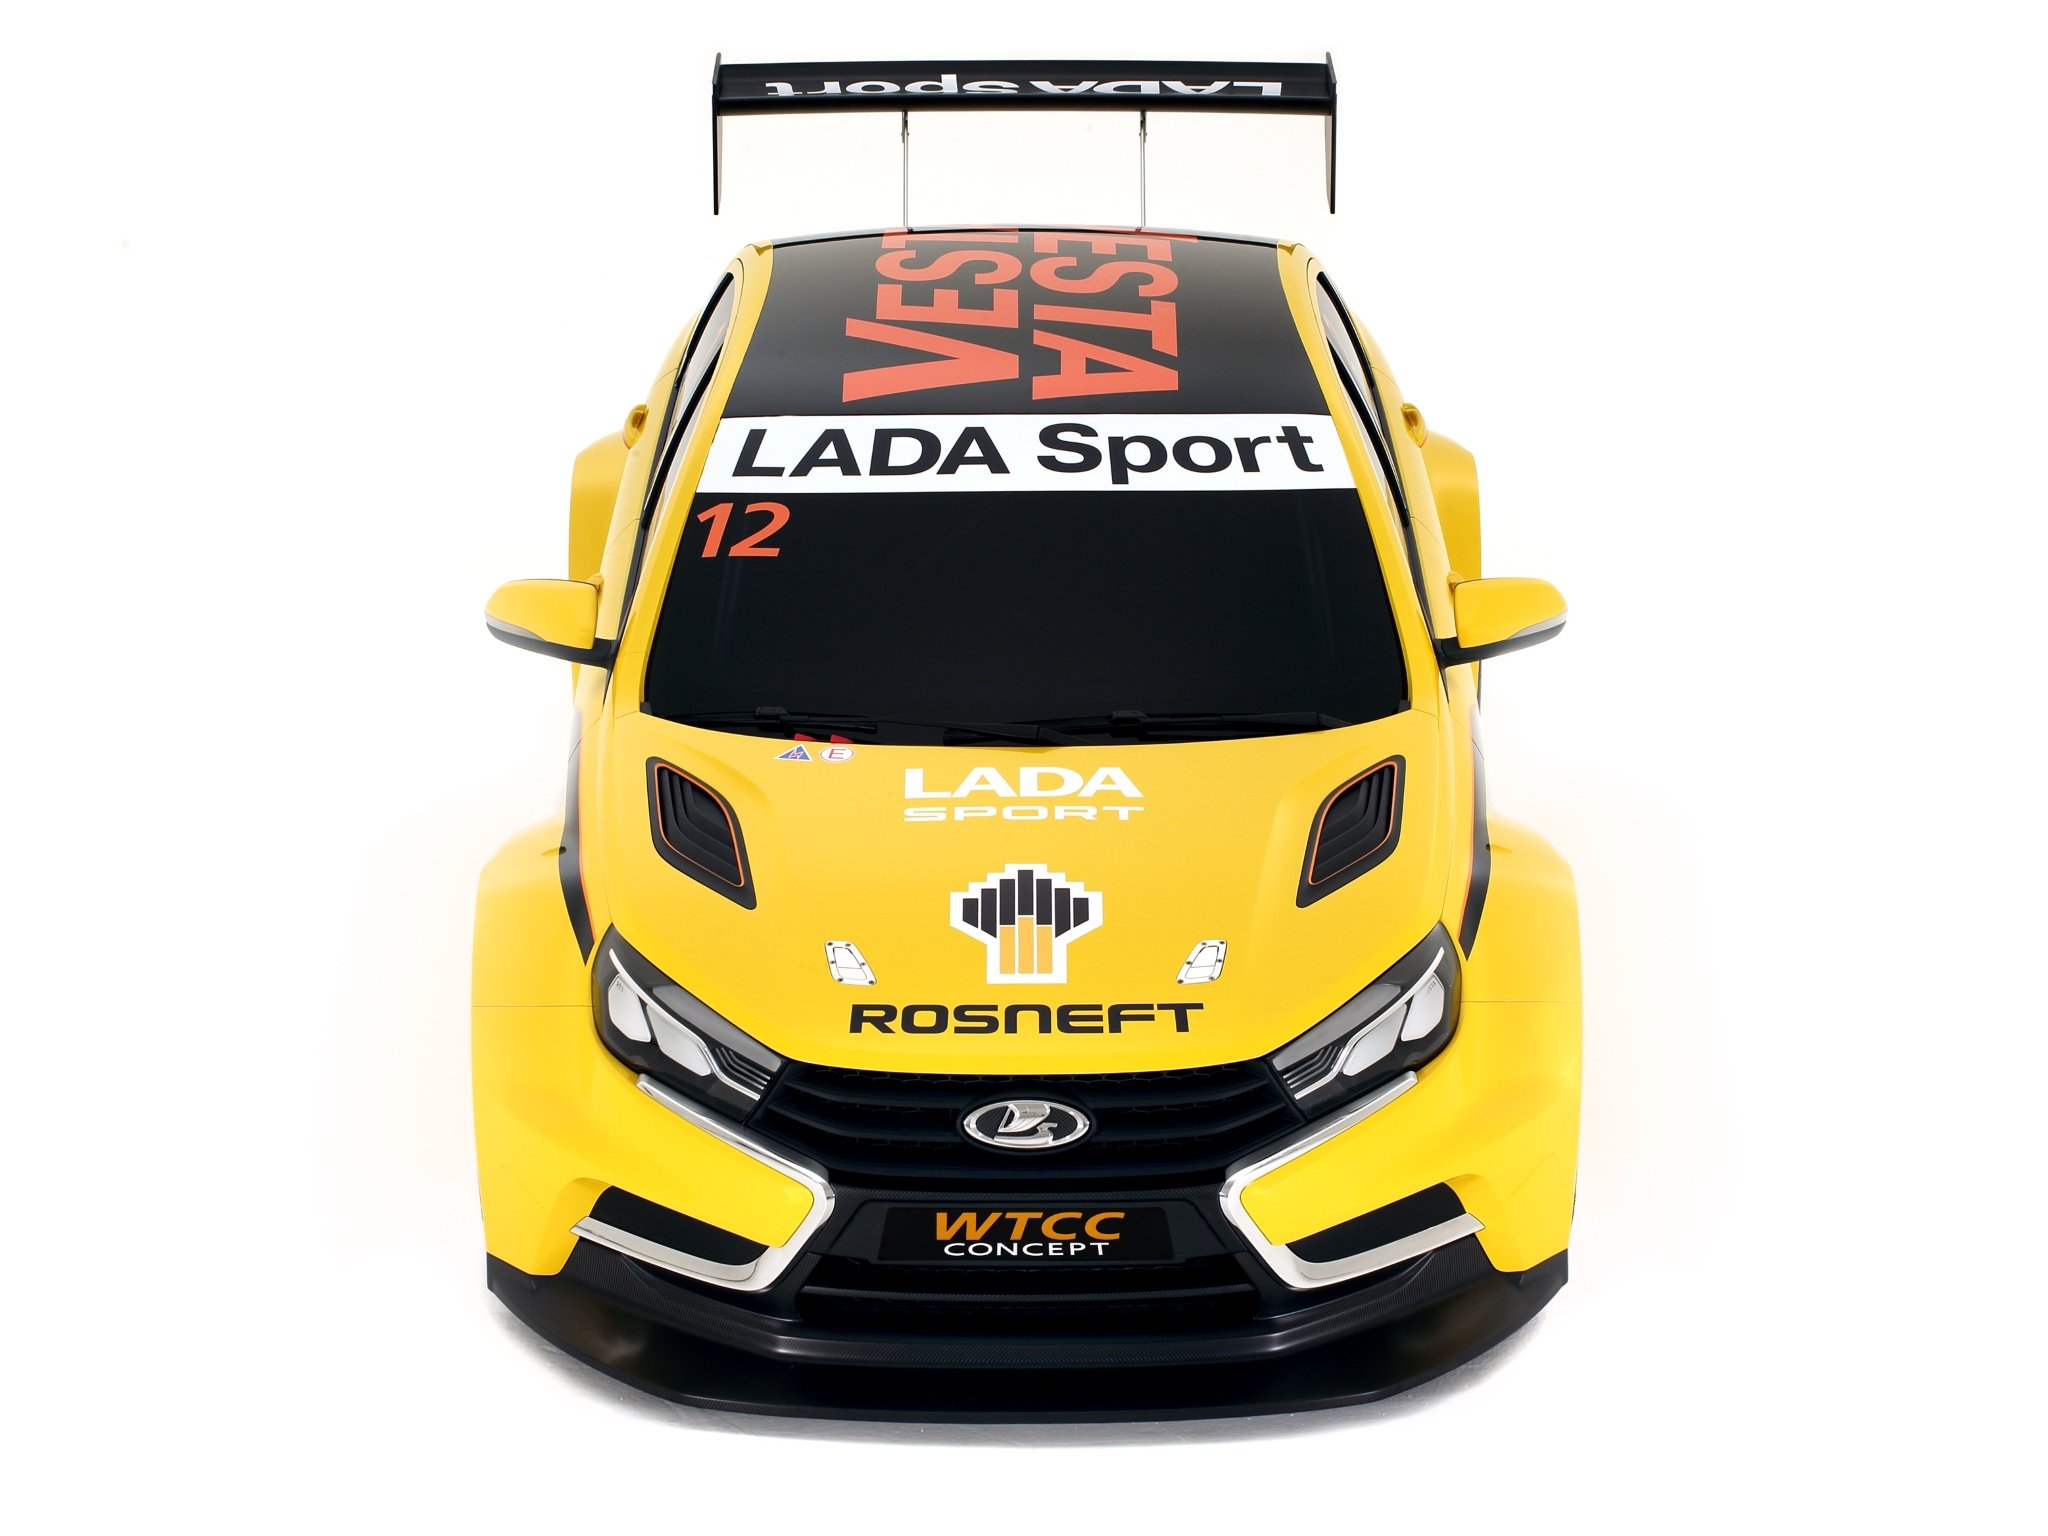 2014, Lada, Vesta, Wtcc, Concept, Race, Racing Wallpaper